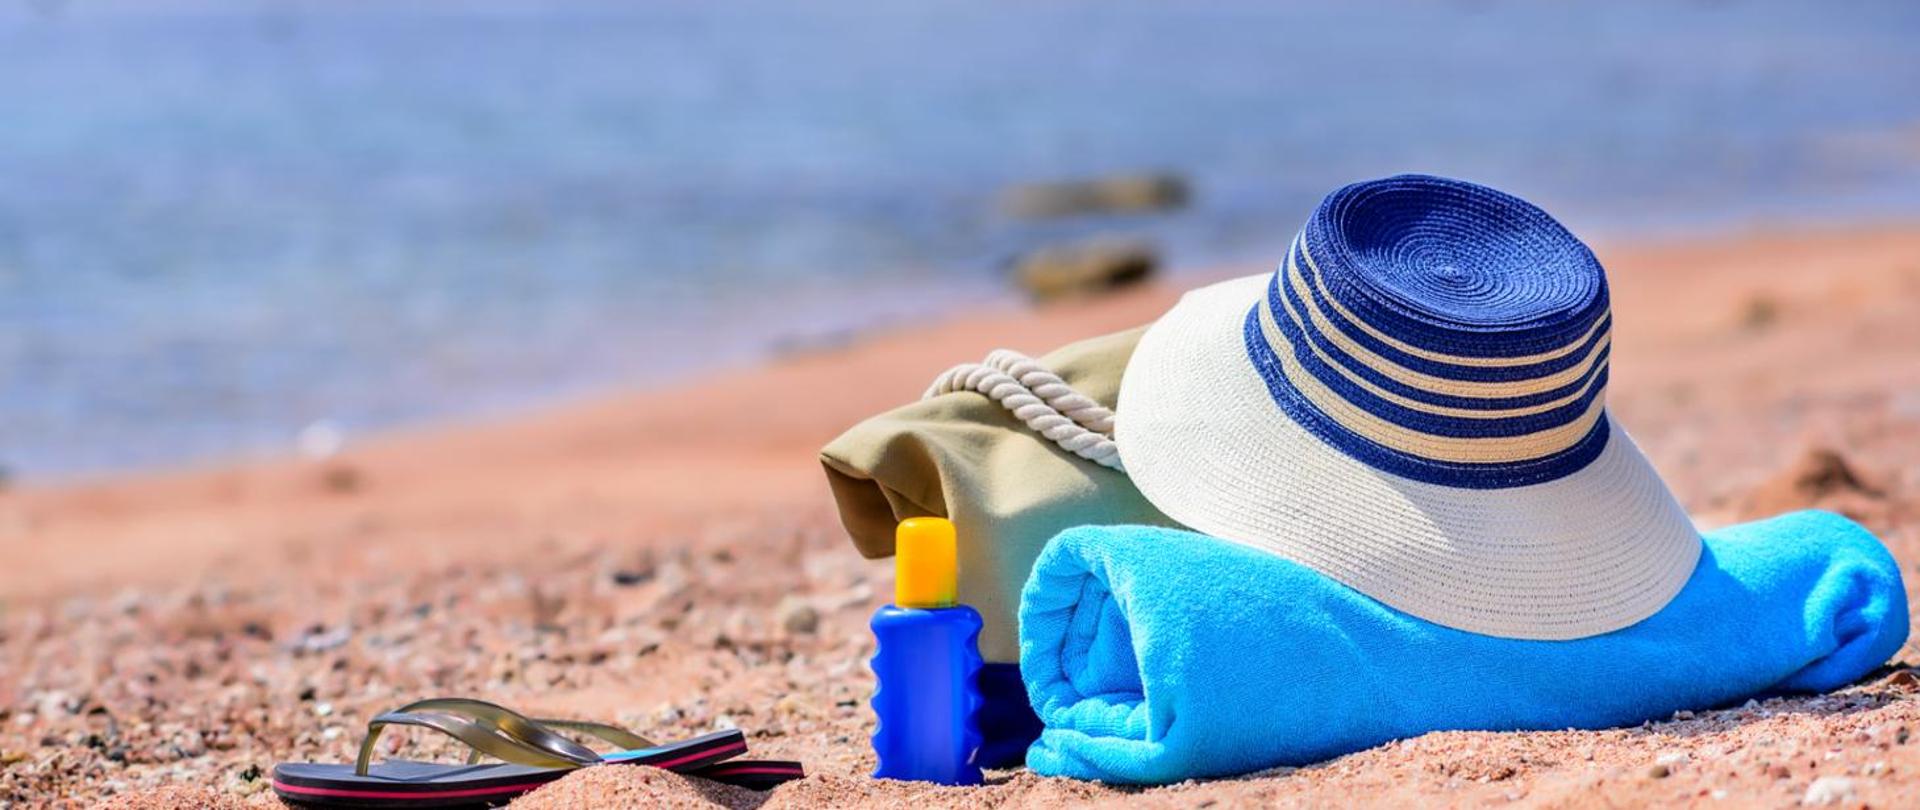 zdjęcie pozostawionych rzeczy na plaży tj. kapelusz, ręcznik, torba, klapki i olejek